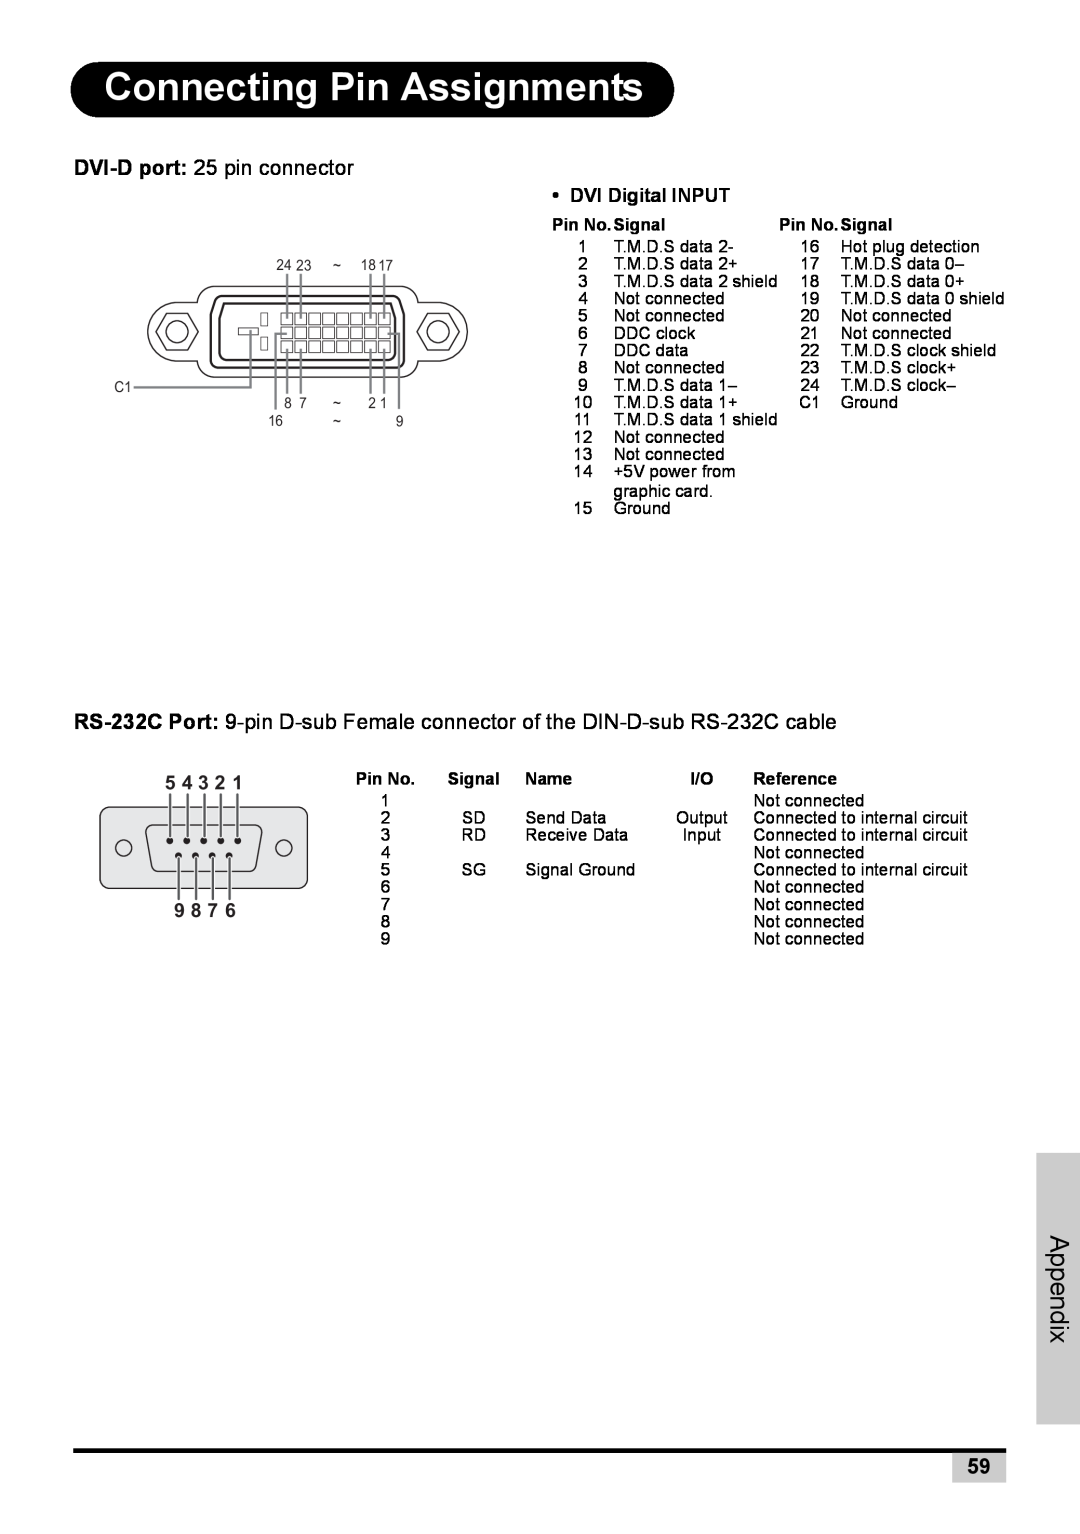 BOXLIGHT PREMIERE 30HD manual Connecting Pin Assignments, DVI-D port 25 pin connector, Appendix 